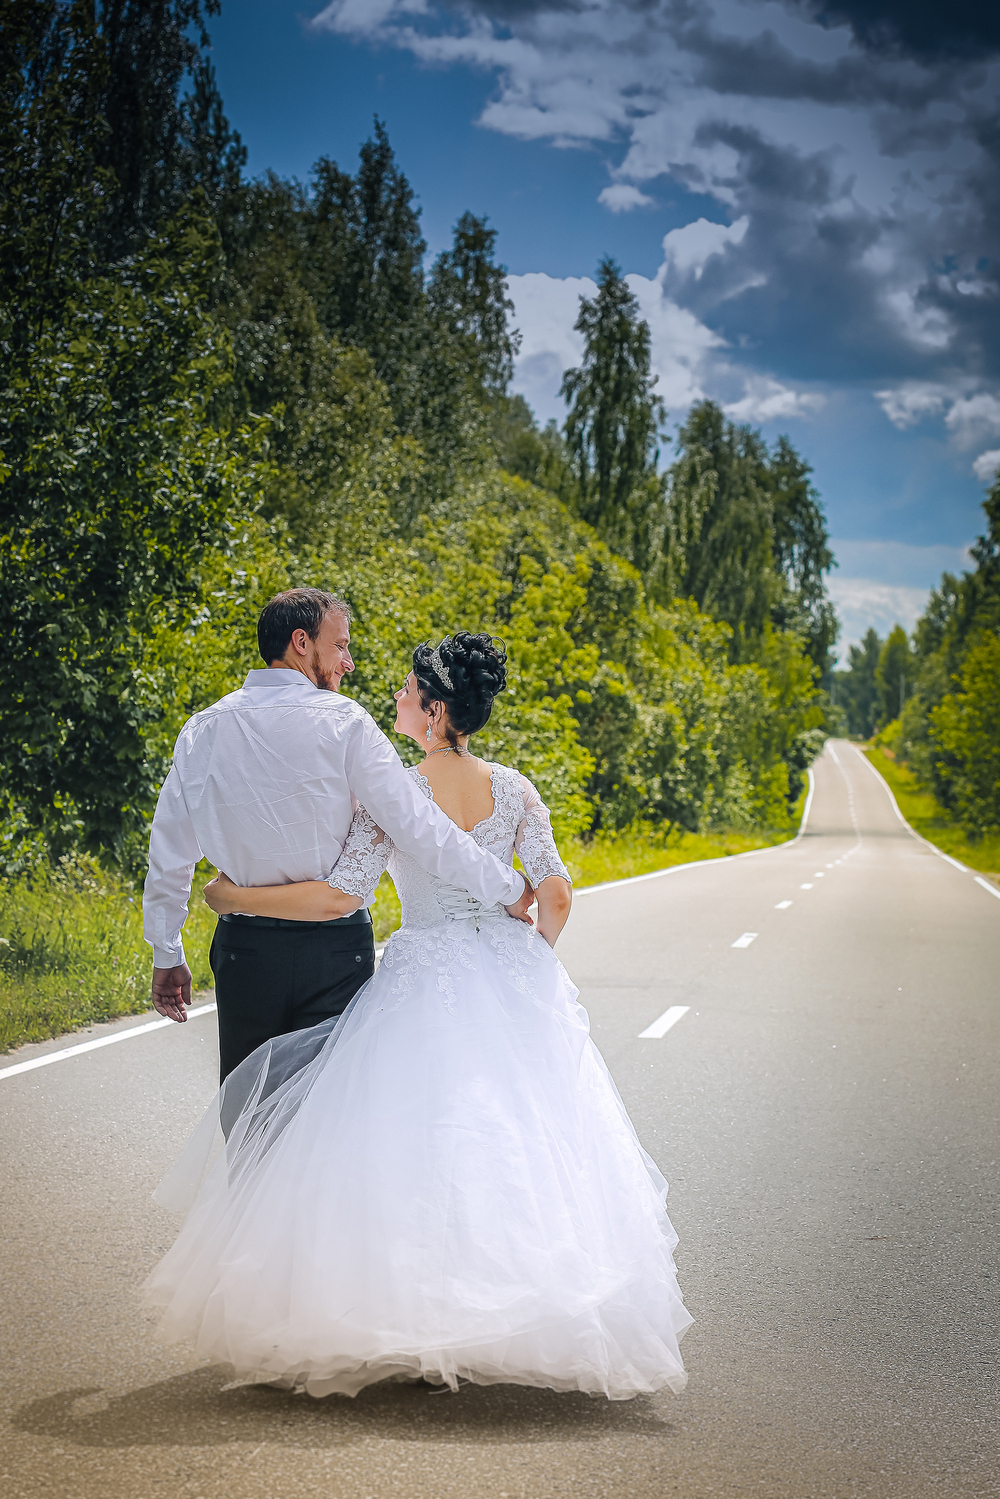 муж и жена идут по дороге